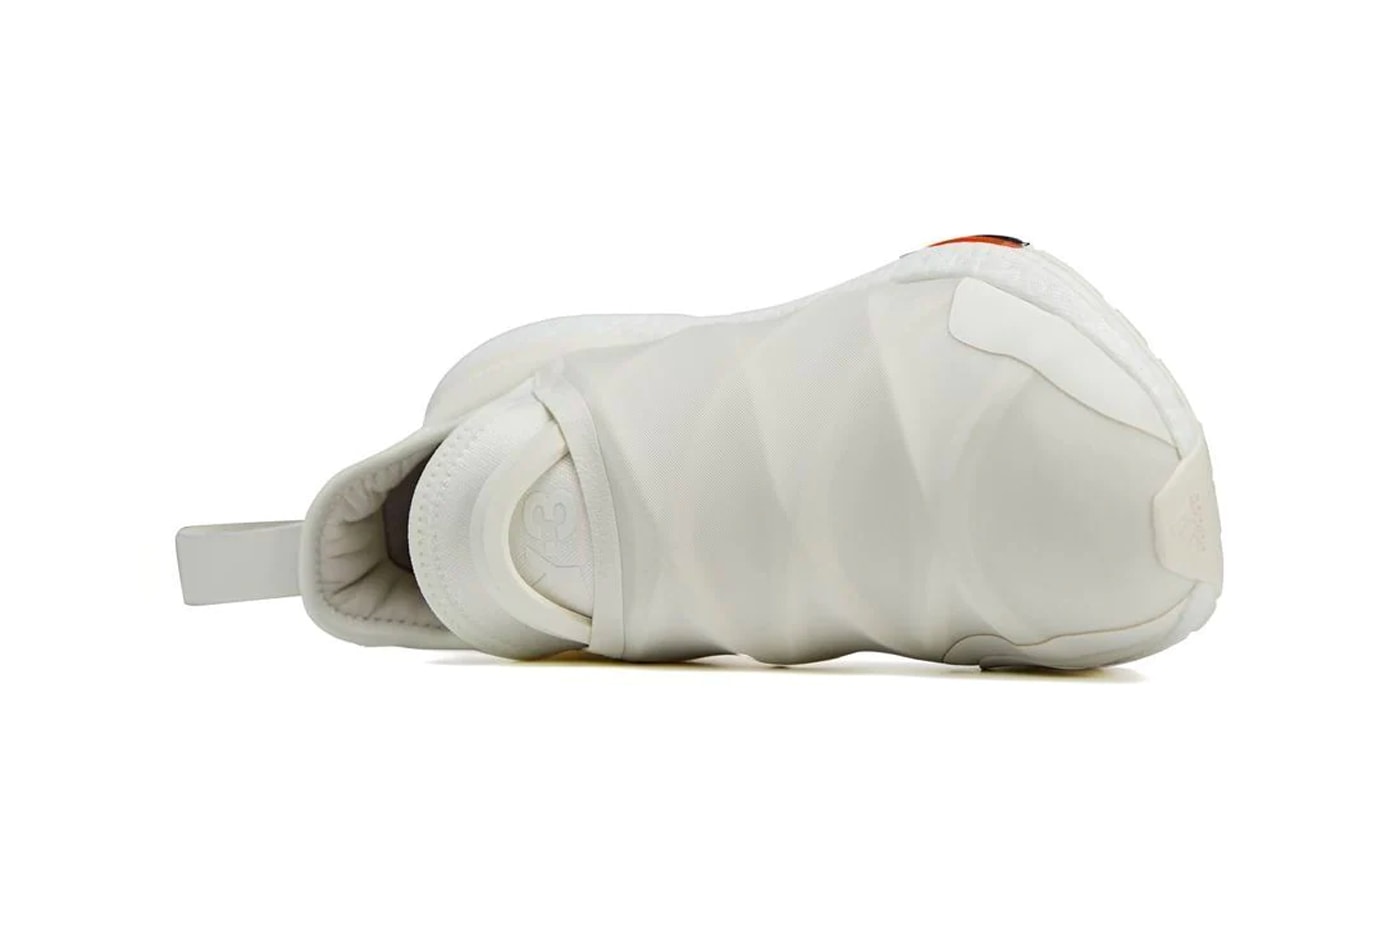 adidas Y-3 UltraBOOST 22 Core White / Cream White HR1980 PRIMEKNIT Yohji Yamamoto Release Information Drops Footwear Sneakers